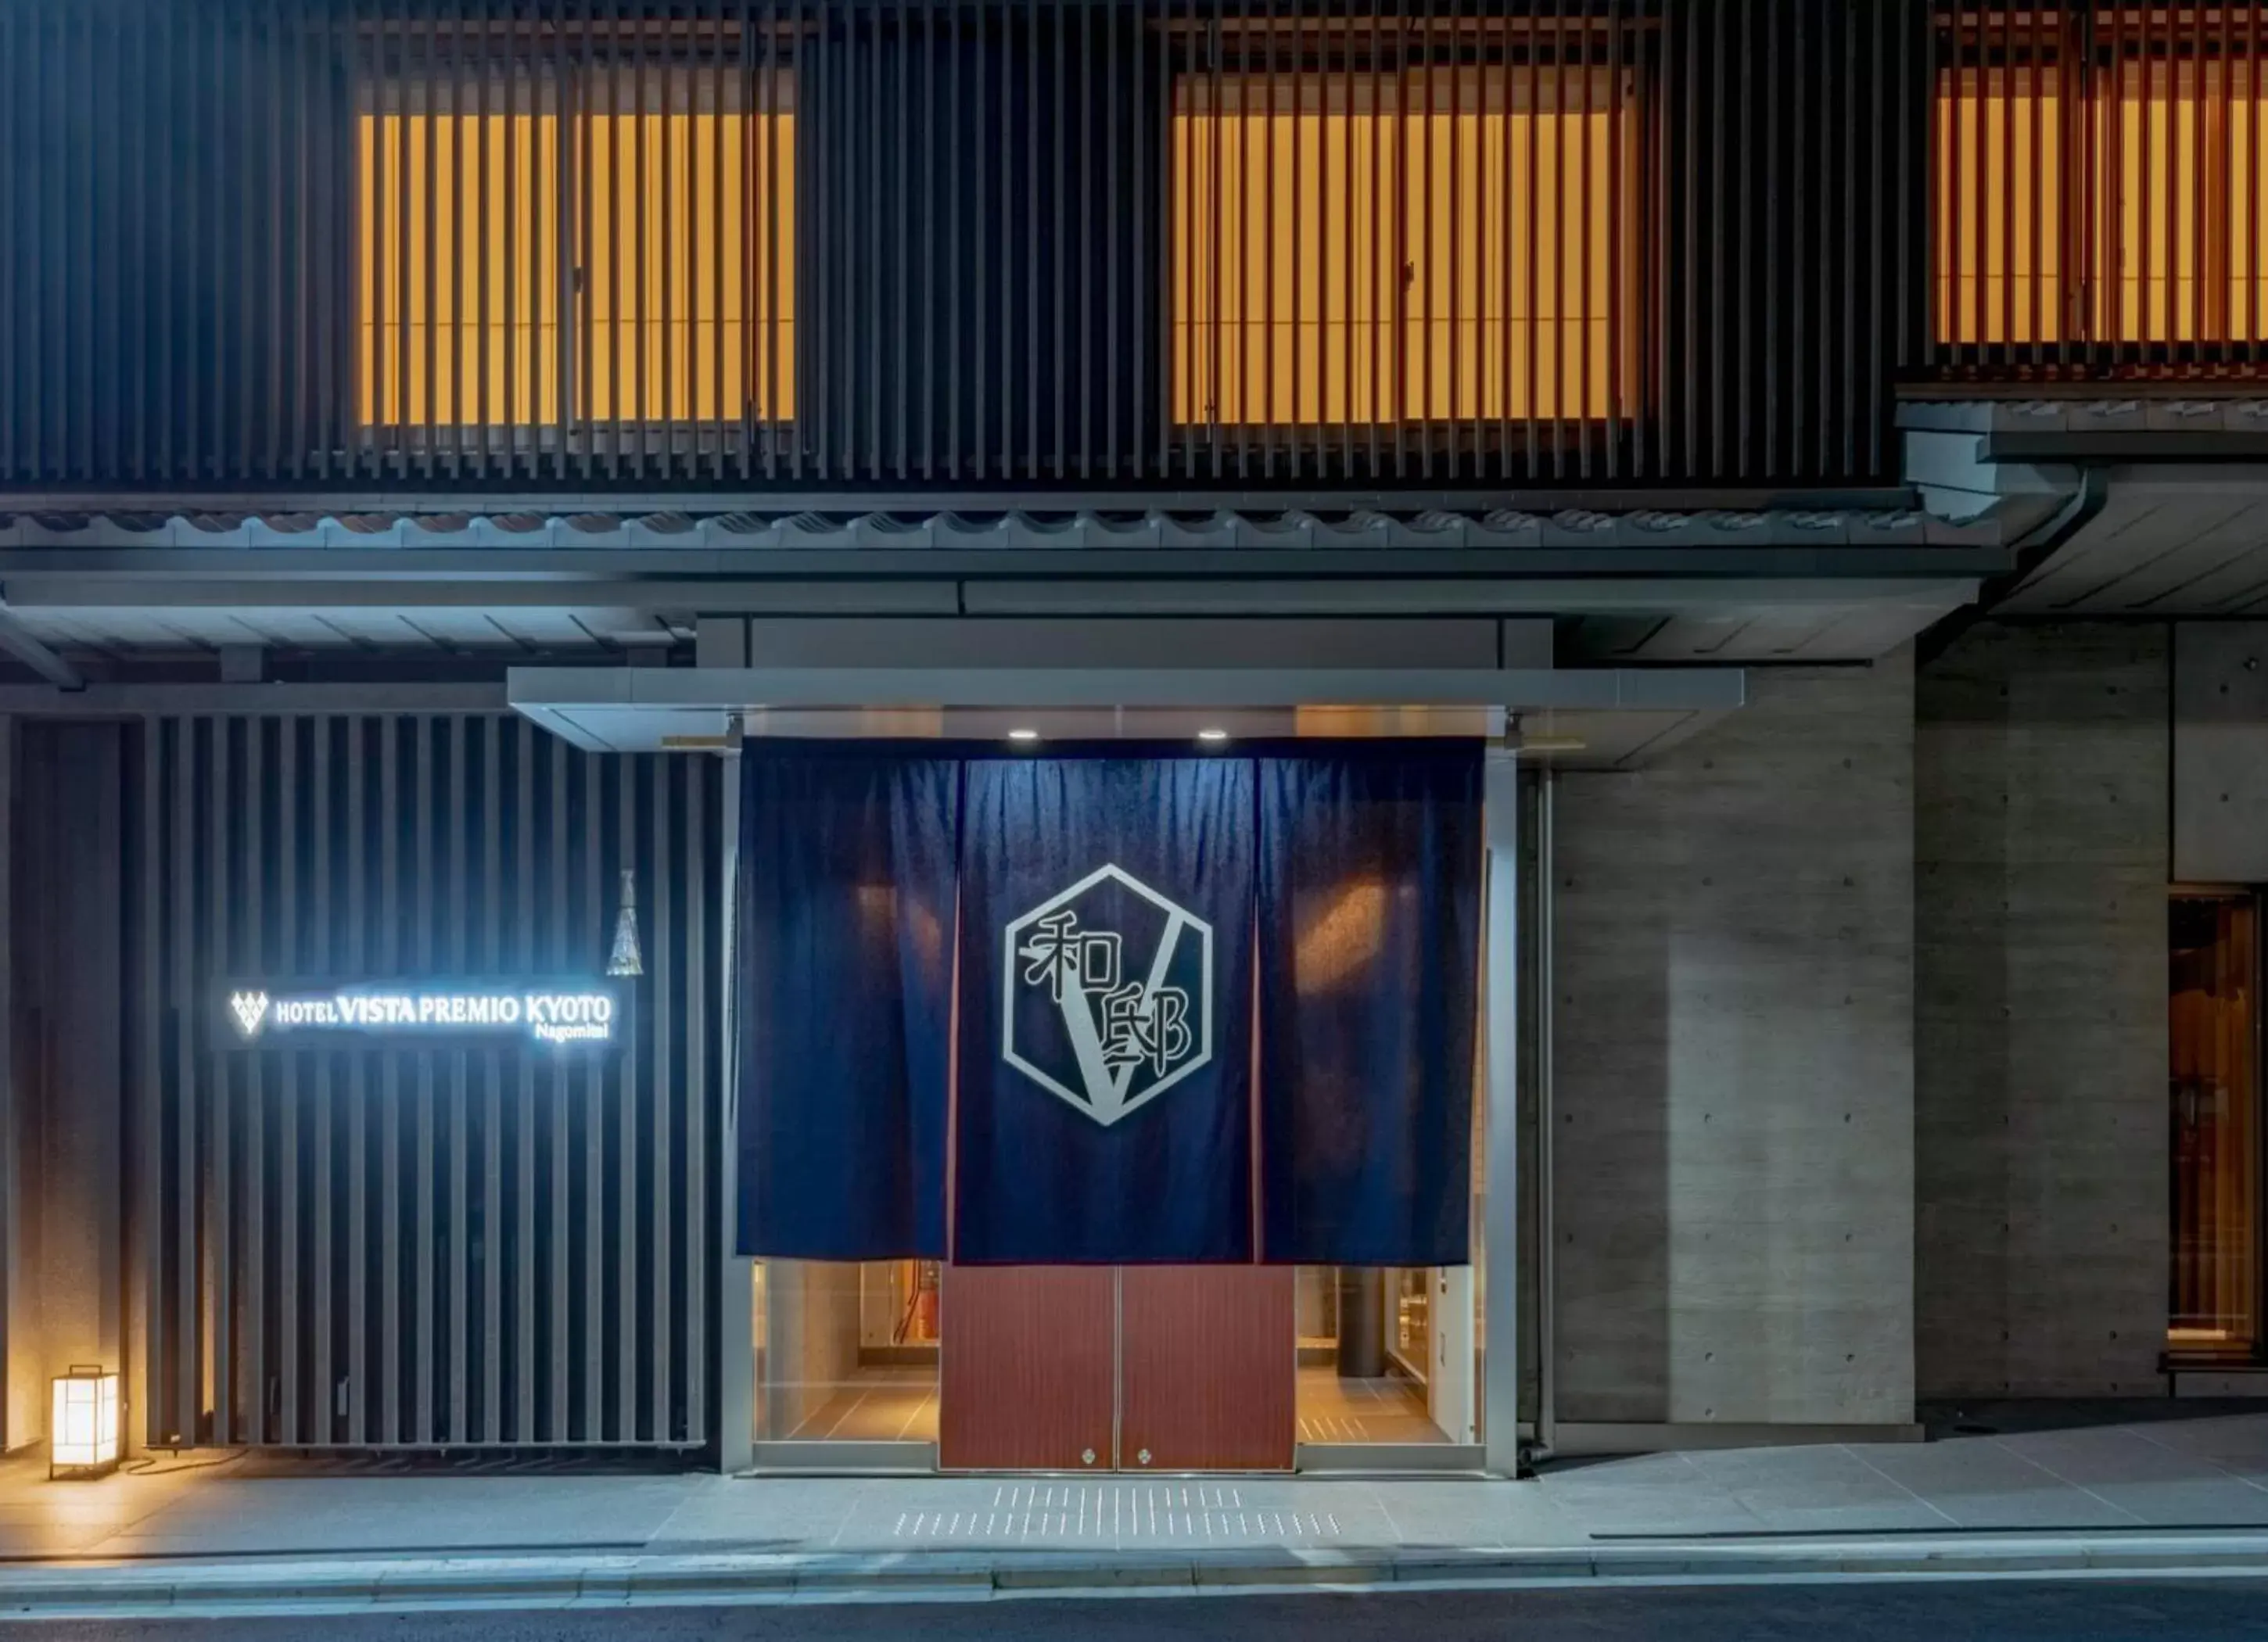 Facade/entrance in Hotel Vista Premio Kyoto Nagomi tei